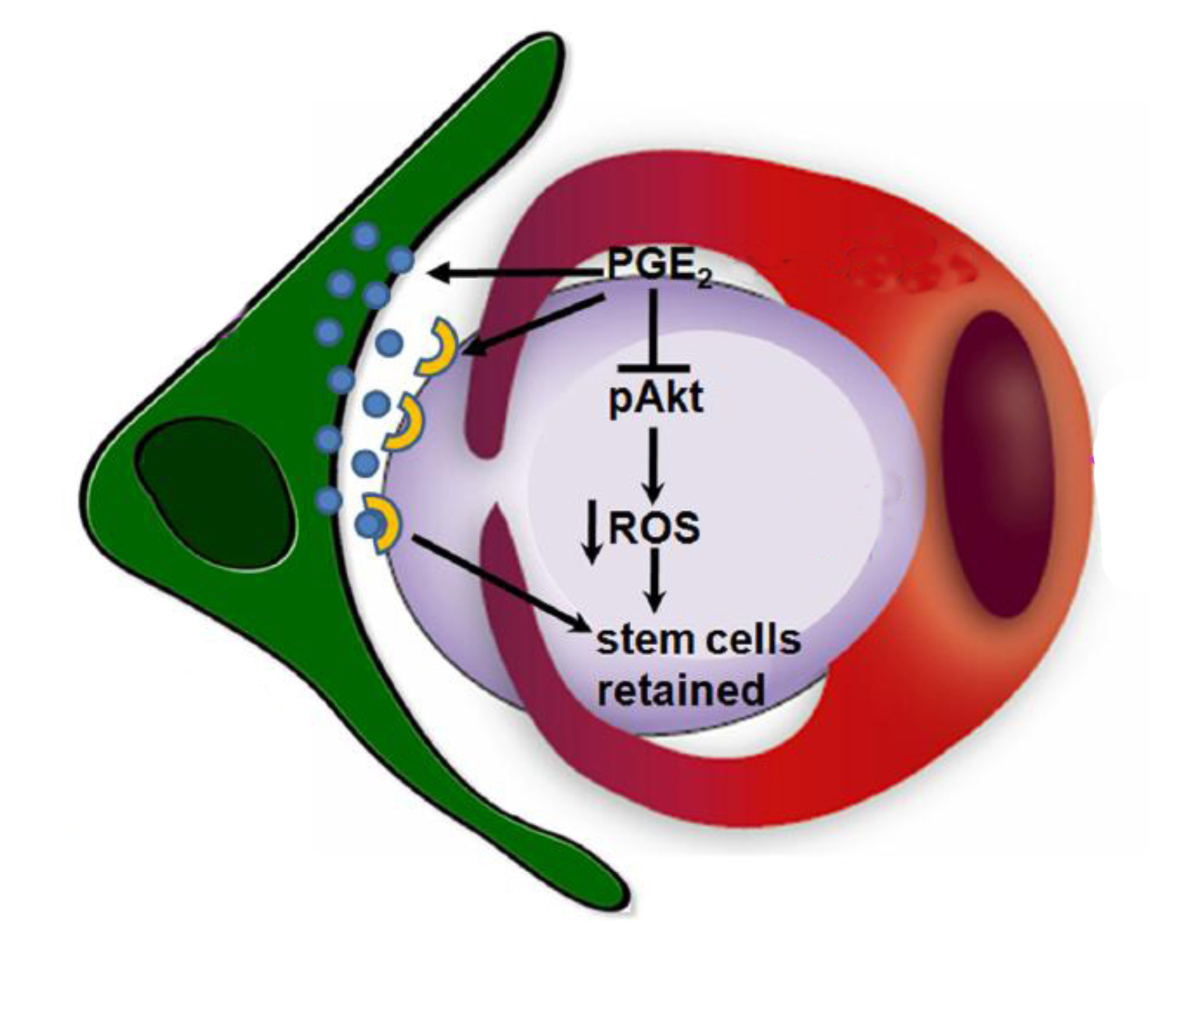 מקרופאג' (באדום) מחבק תא גזע (בסגול) ומייצר פרוסטגלנדינים (PGE2), אשר נקלטים על-ידי תא הגזע ומפעילים שרשרת של אירועים ביוכימיים. בנוסף, הפרוסטגלנדינים מגבירים את ההפרשה של חומר מעכב (בתכלת) מתאים מזנכימליים בלשד העצם (בירוק), ואת ביטוי הקולטנים לחומר זה (בצהוב) על תא הגזע.